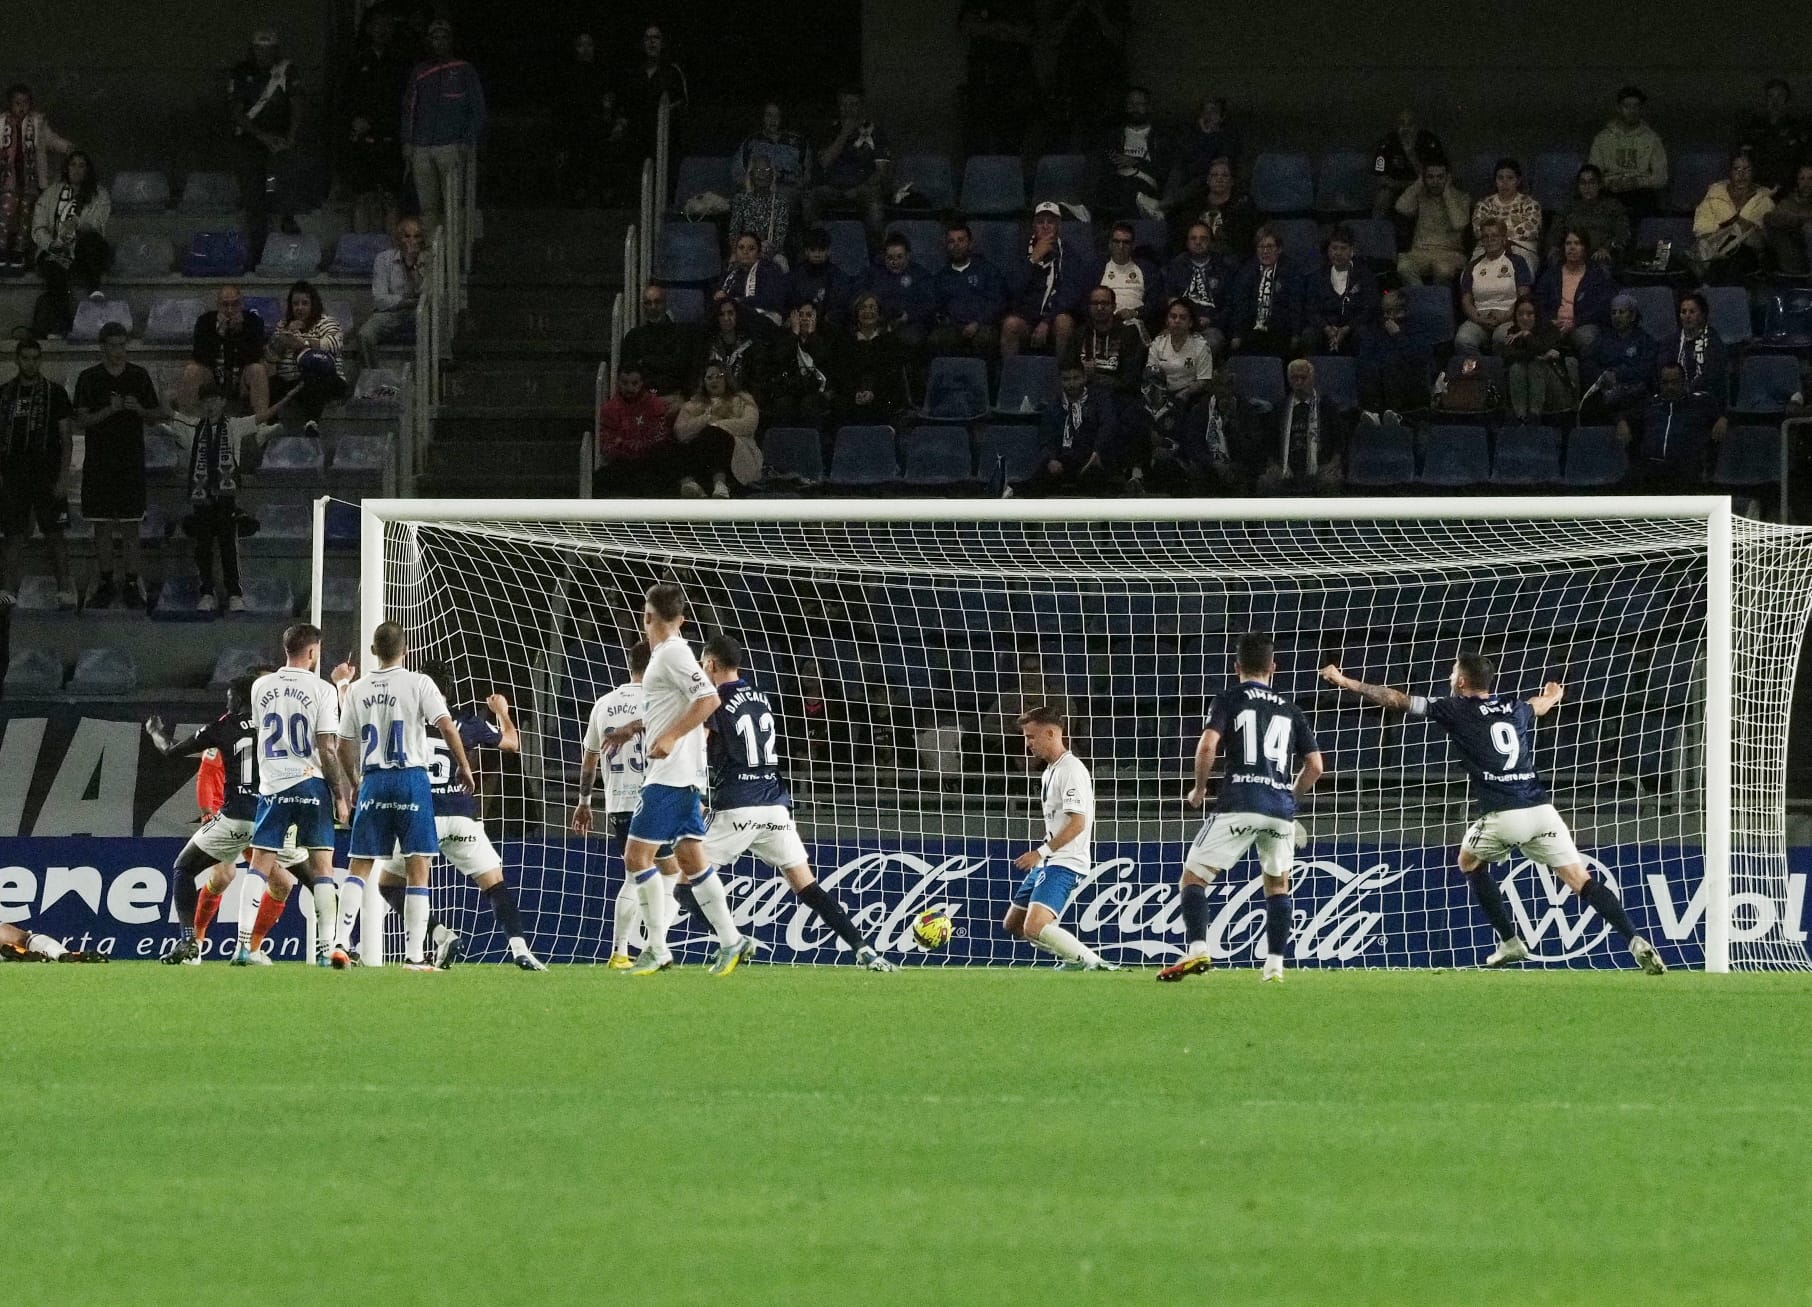 El hormigón lo puso el Oviedo de Cervera y el Tenerife confirma su mal momento (0-1)